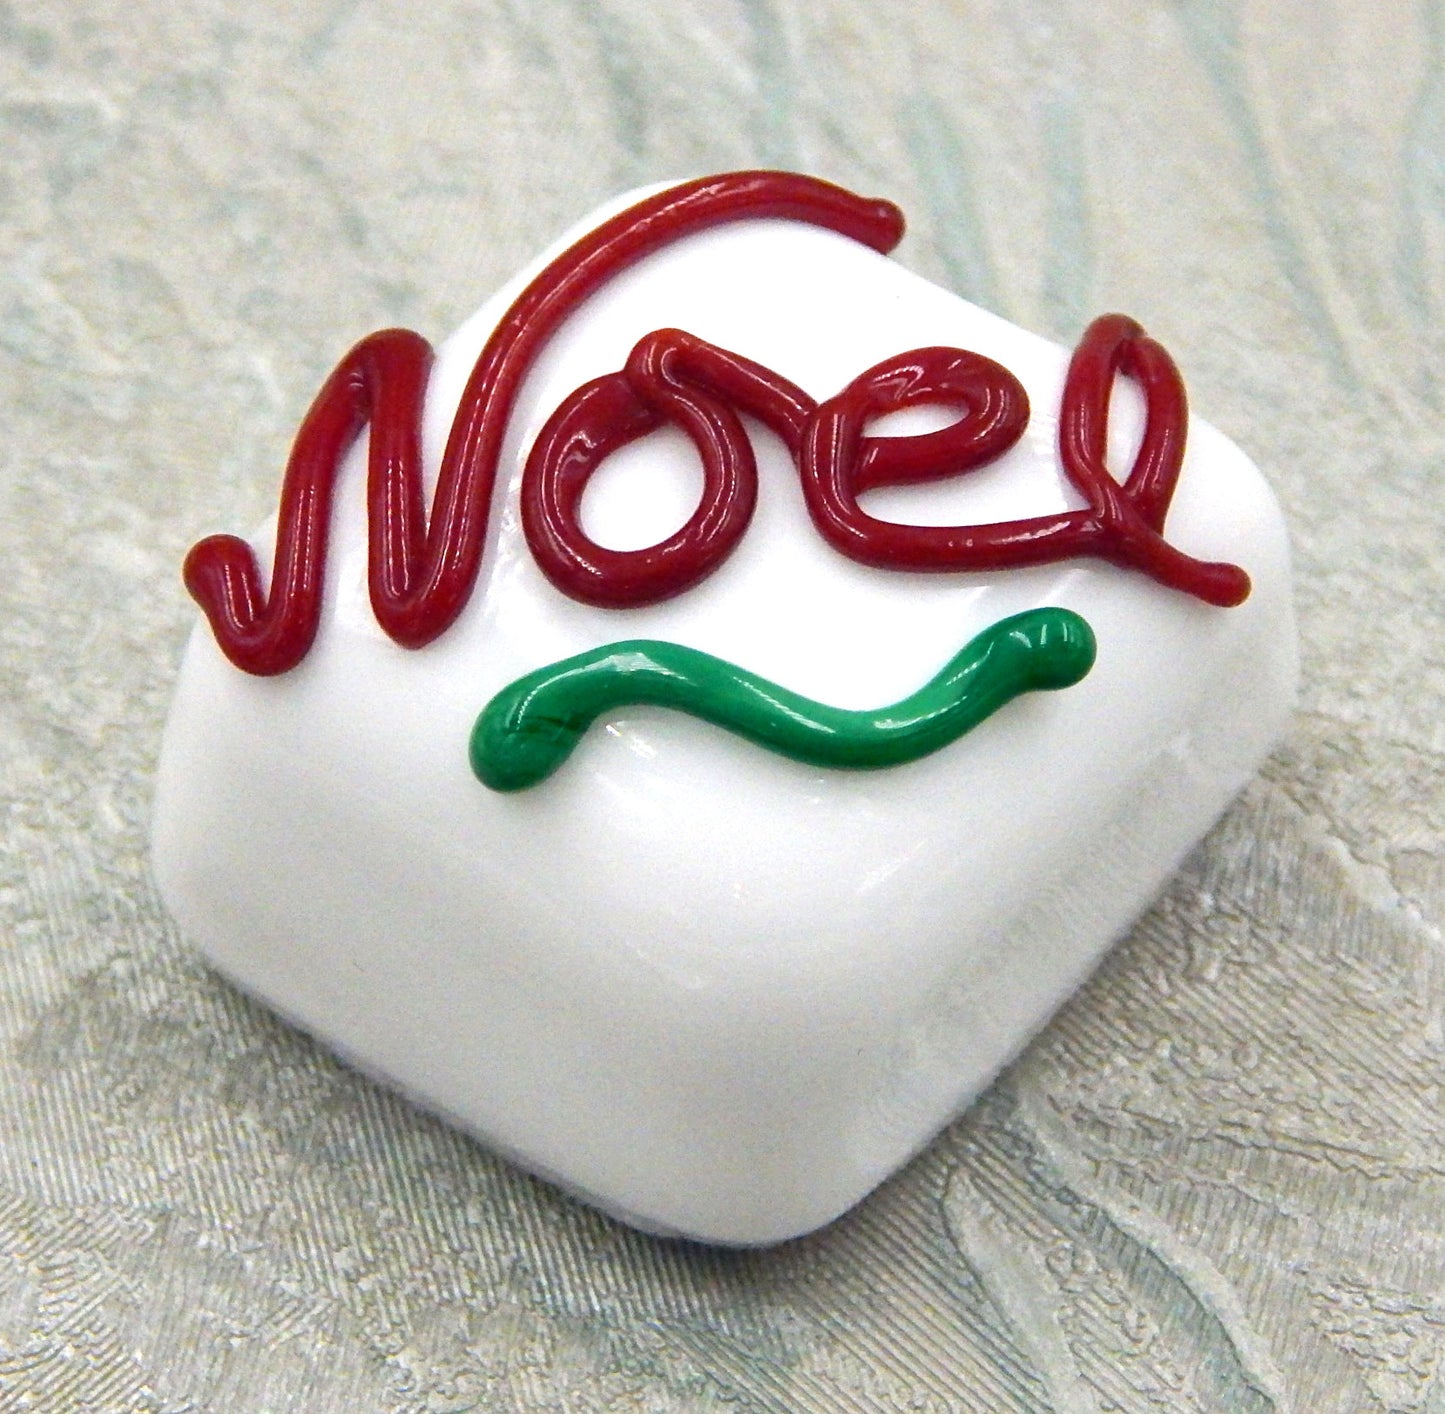 Chocolate with Christmas "Noel" (17-062+)